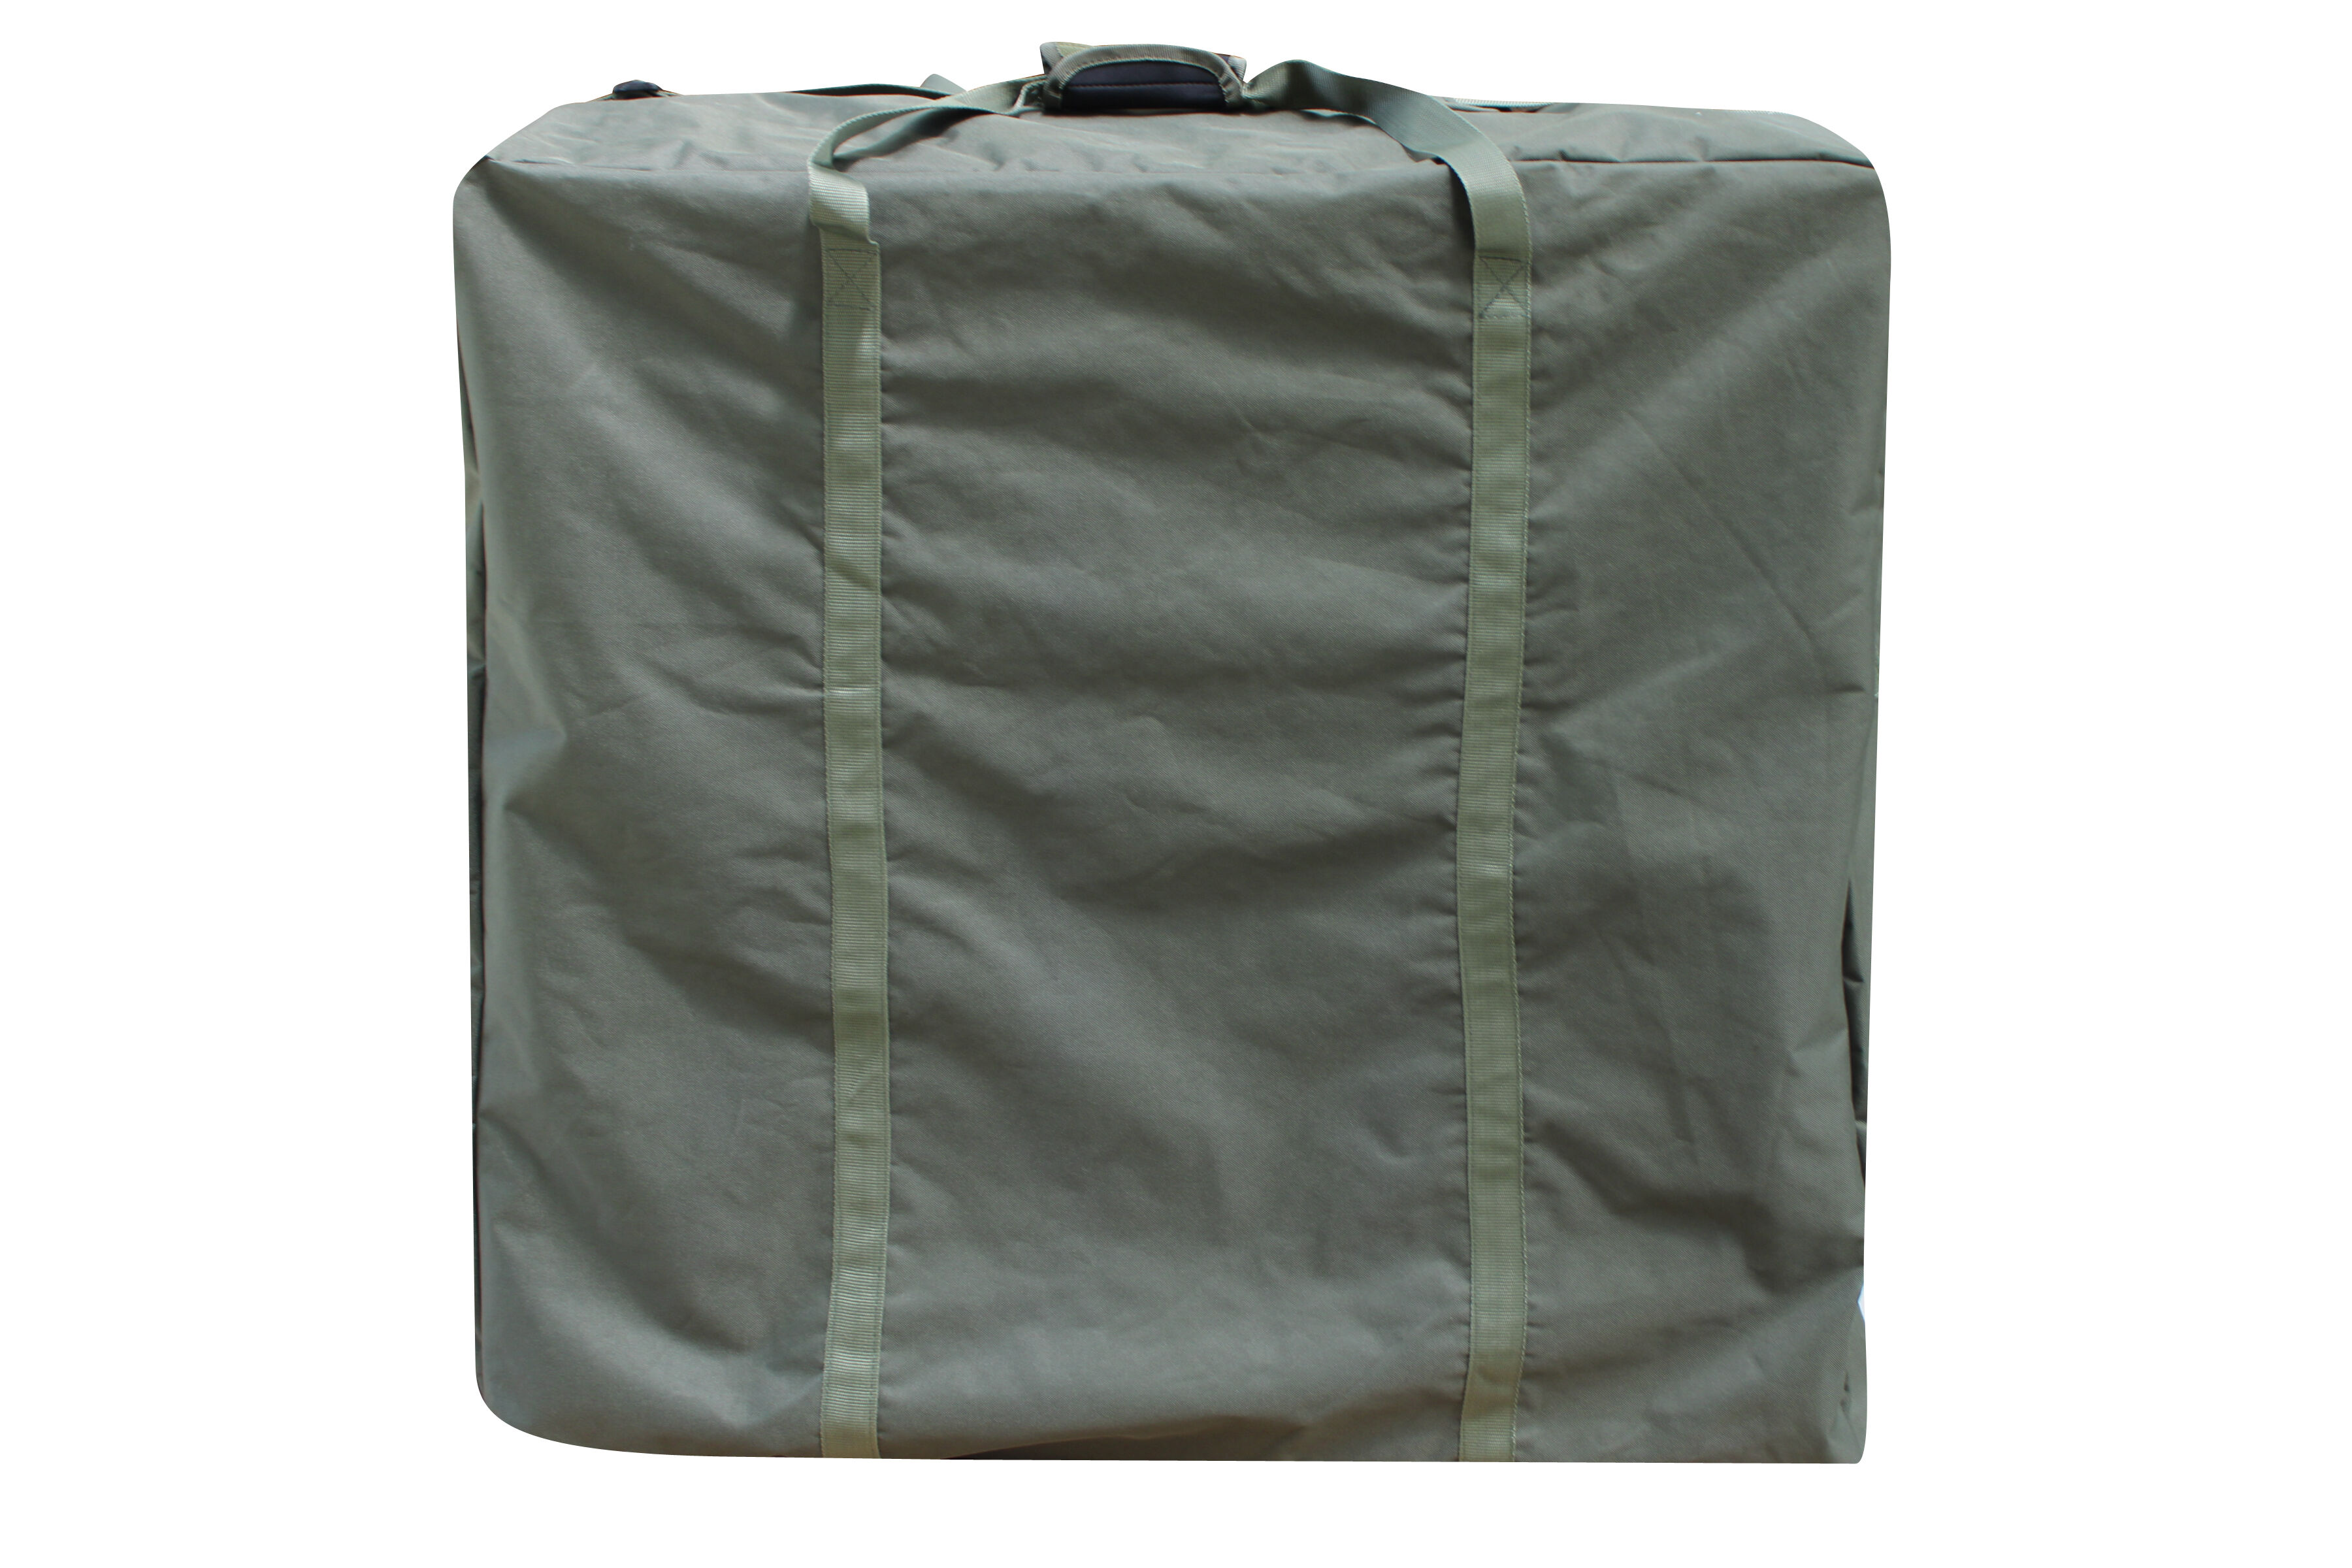 Durch die gummierte Beschichtung des Bedchair Bags bleibt die Karpfenliege garantiert trocken.